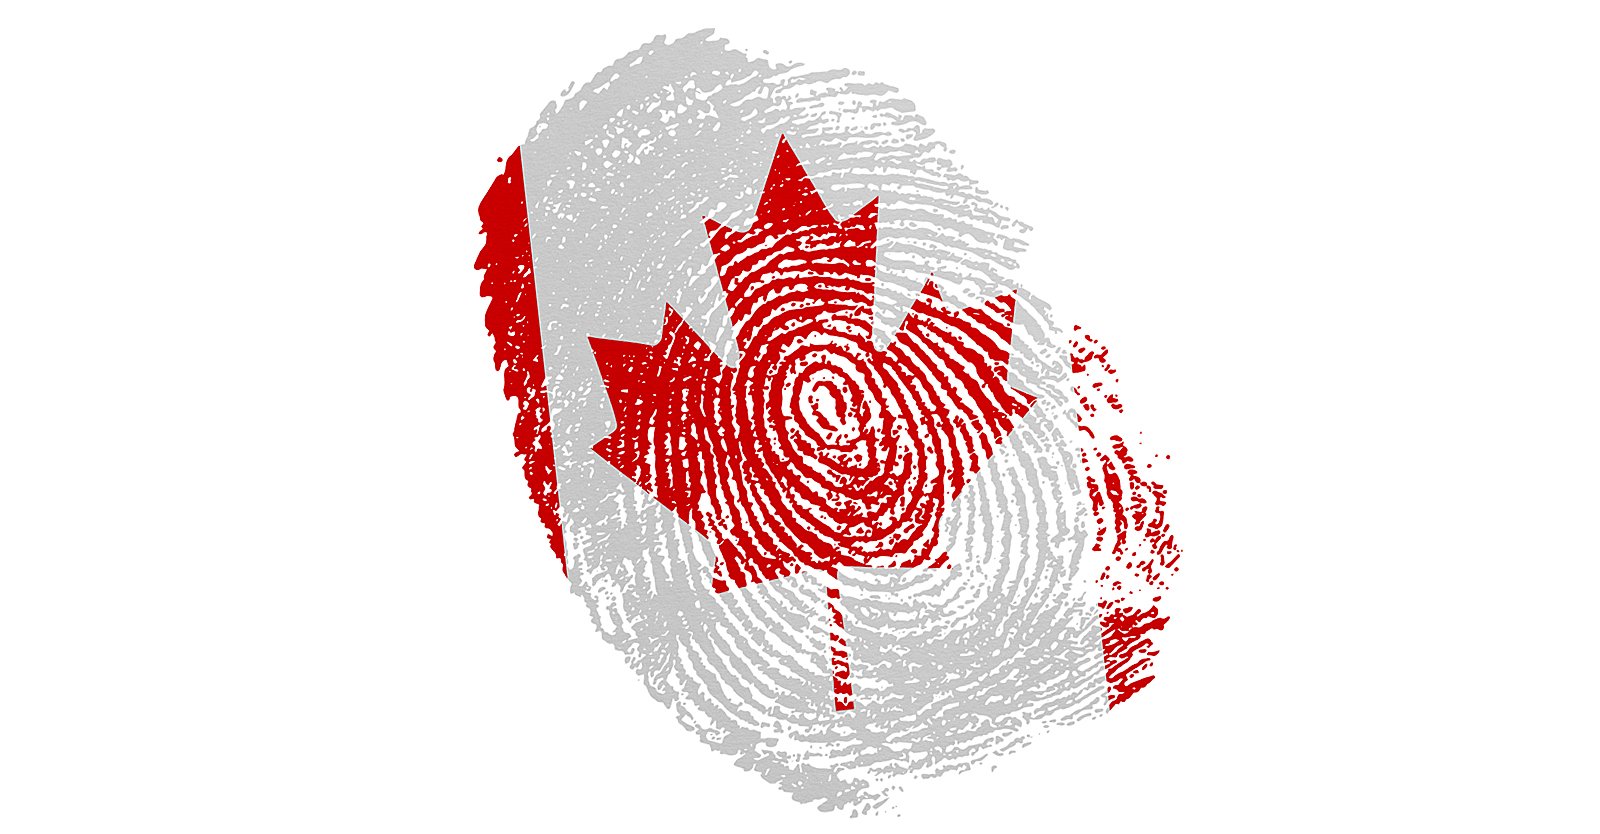 Met hulp van WEF lanceert Canada federaal programma voor digitale identiteit